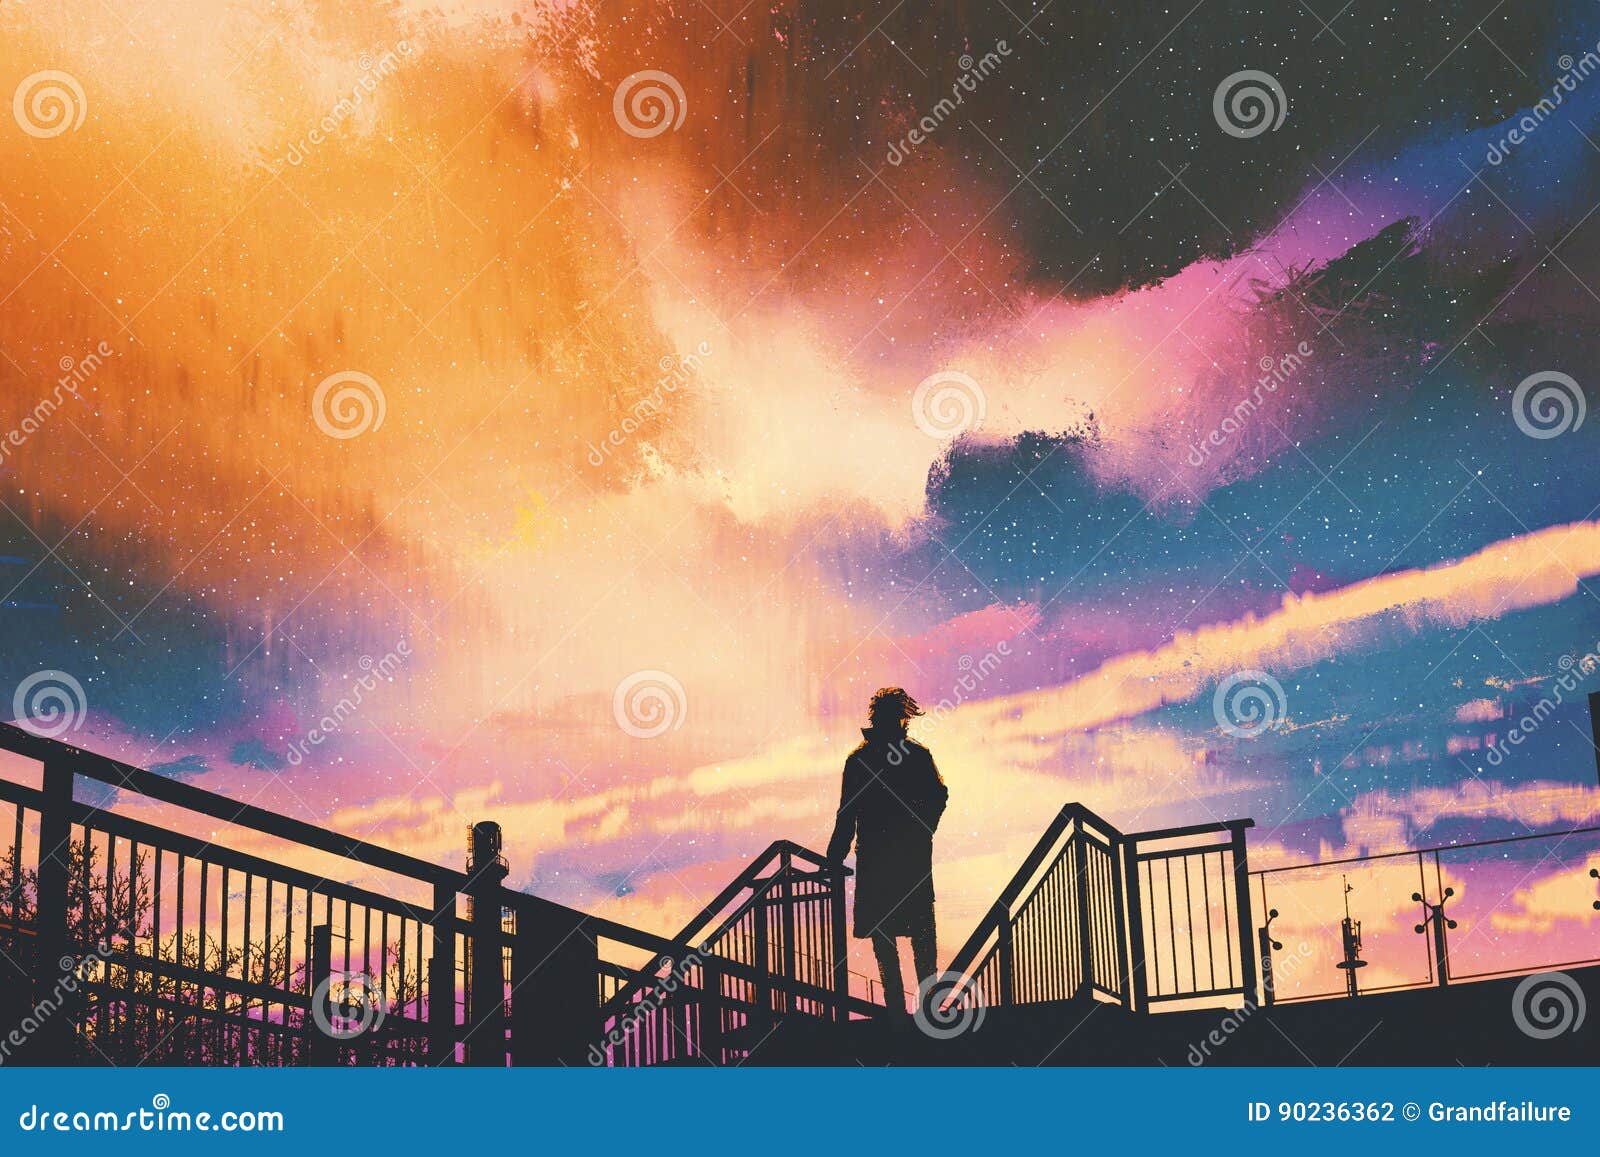 man standing on footbridge against colorful sky